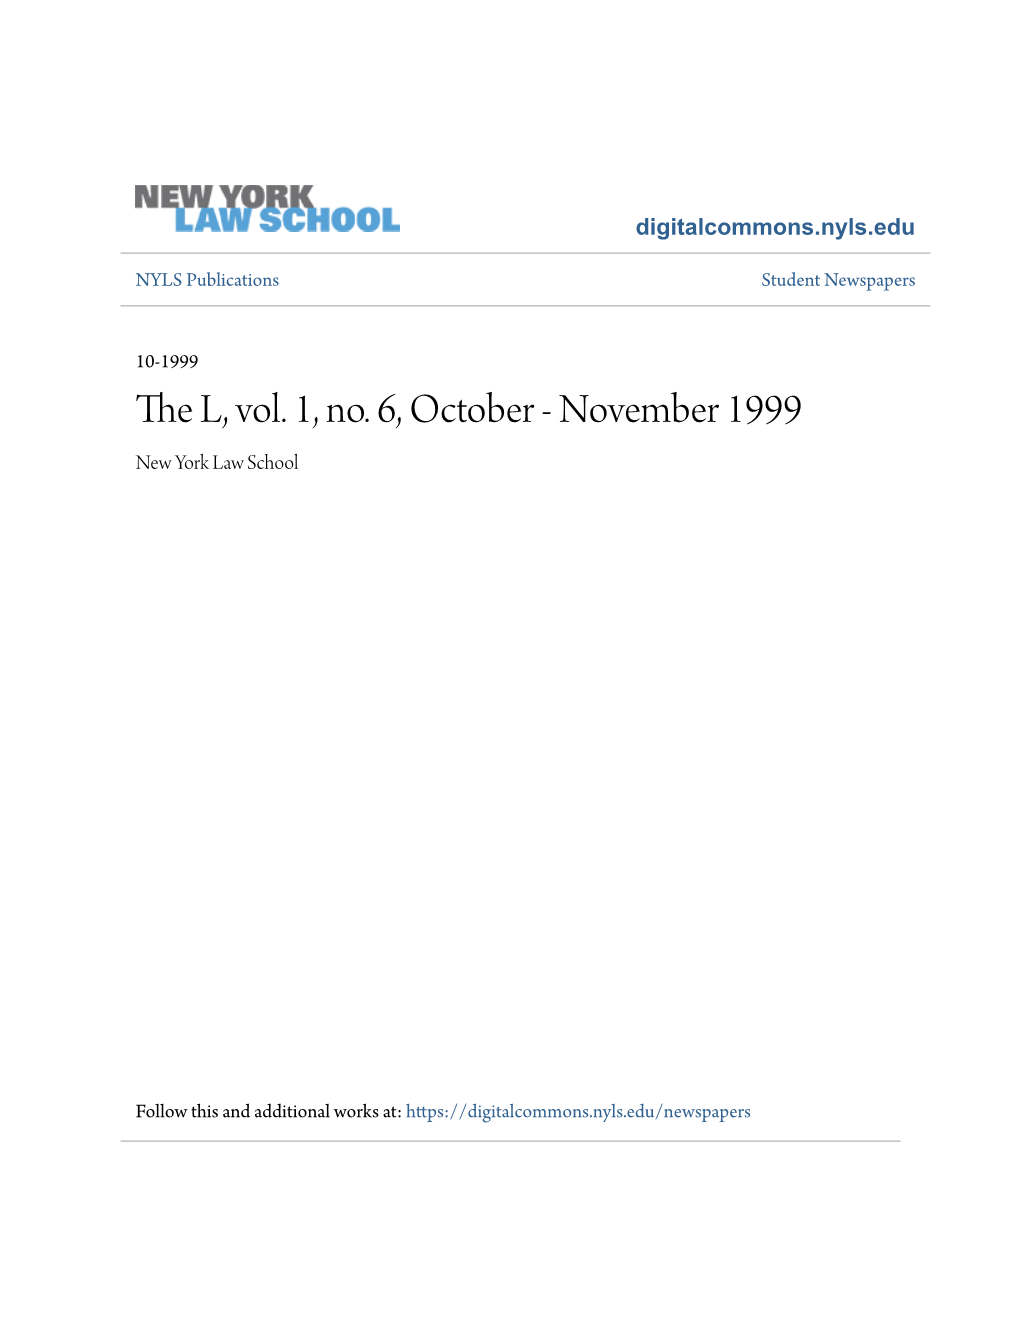 The L, Vol. 1, No. 6, October - November 1999 New York Law School